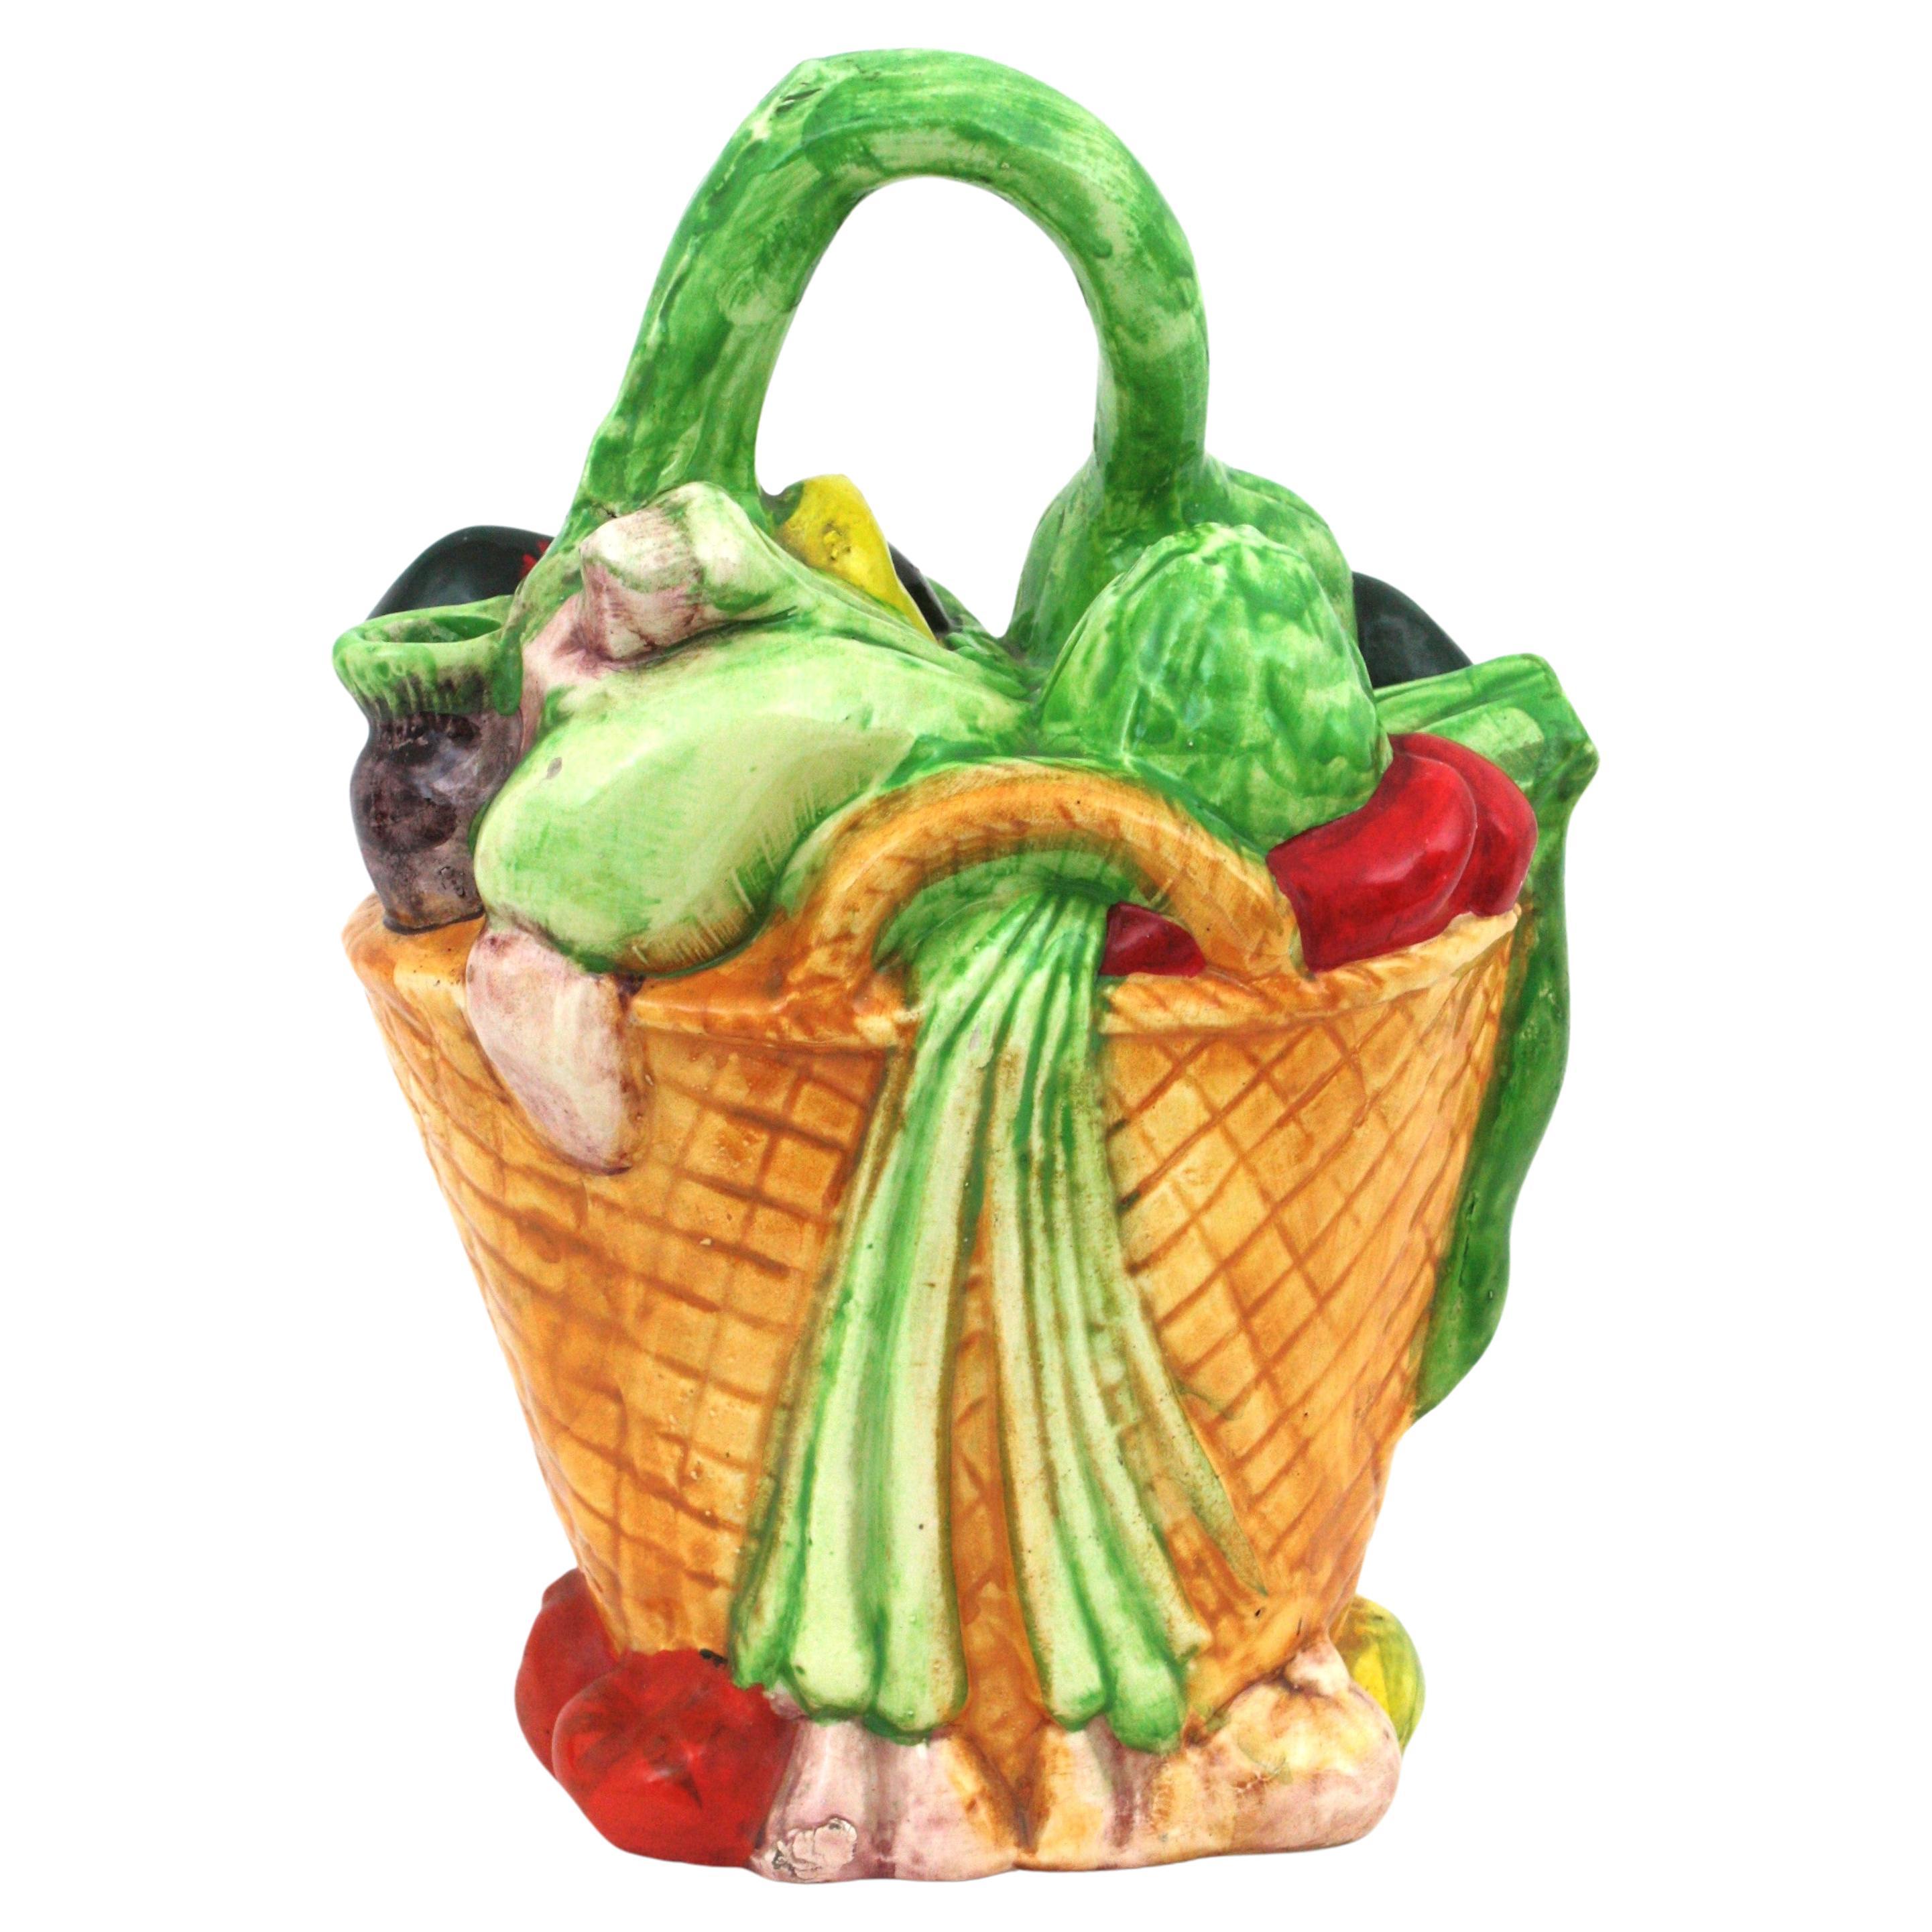 Majolika-Korbgefäß/Krug mit glasierter Keramik für Gemüse aus Majolika, Spanien, 1960er Jahre